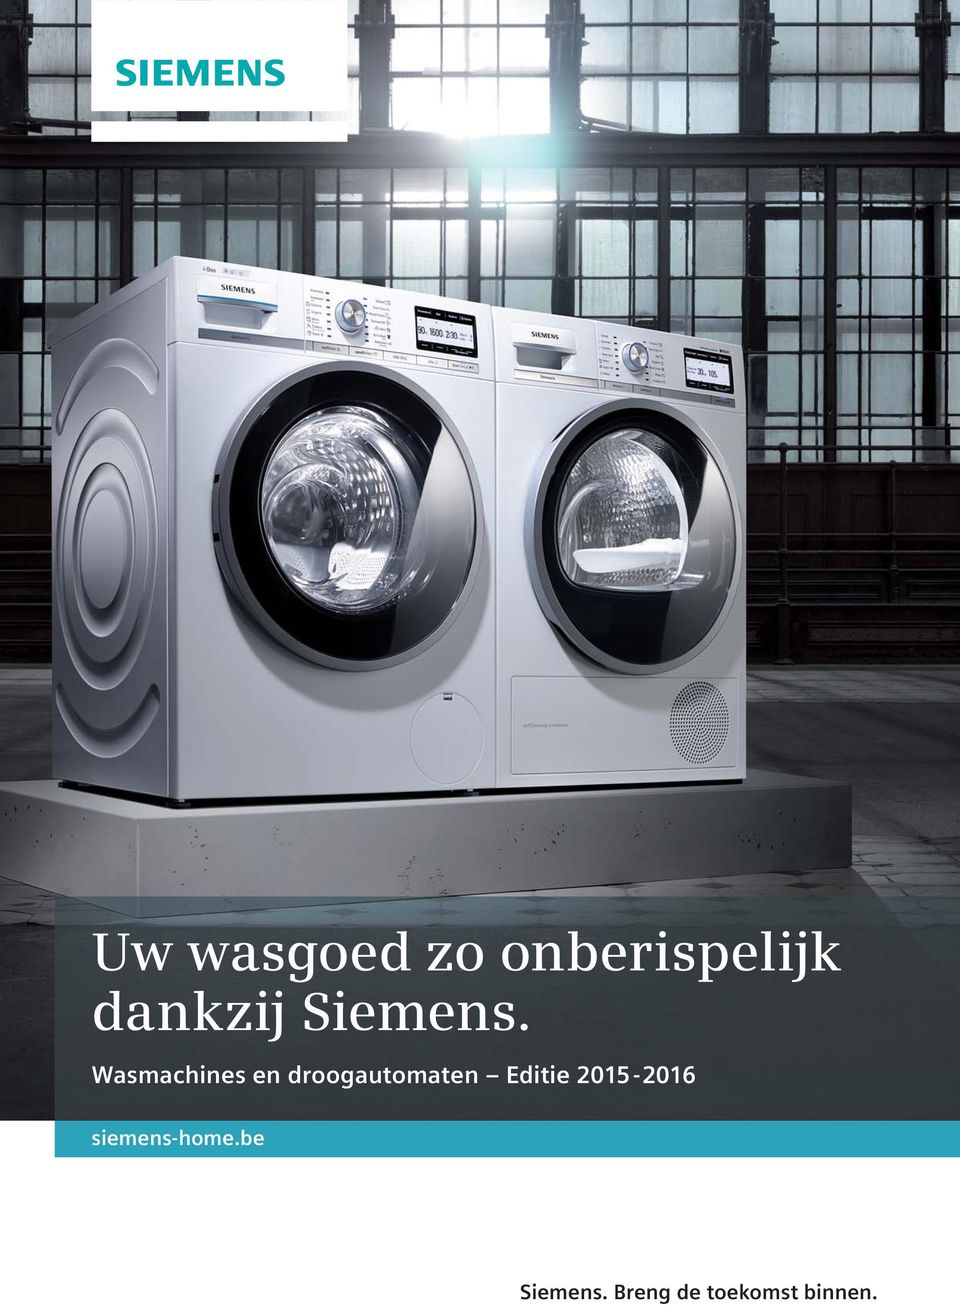 Wasmachines en droogautomaten